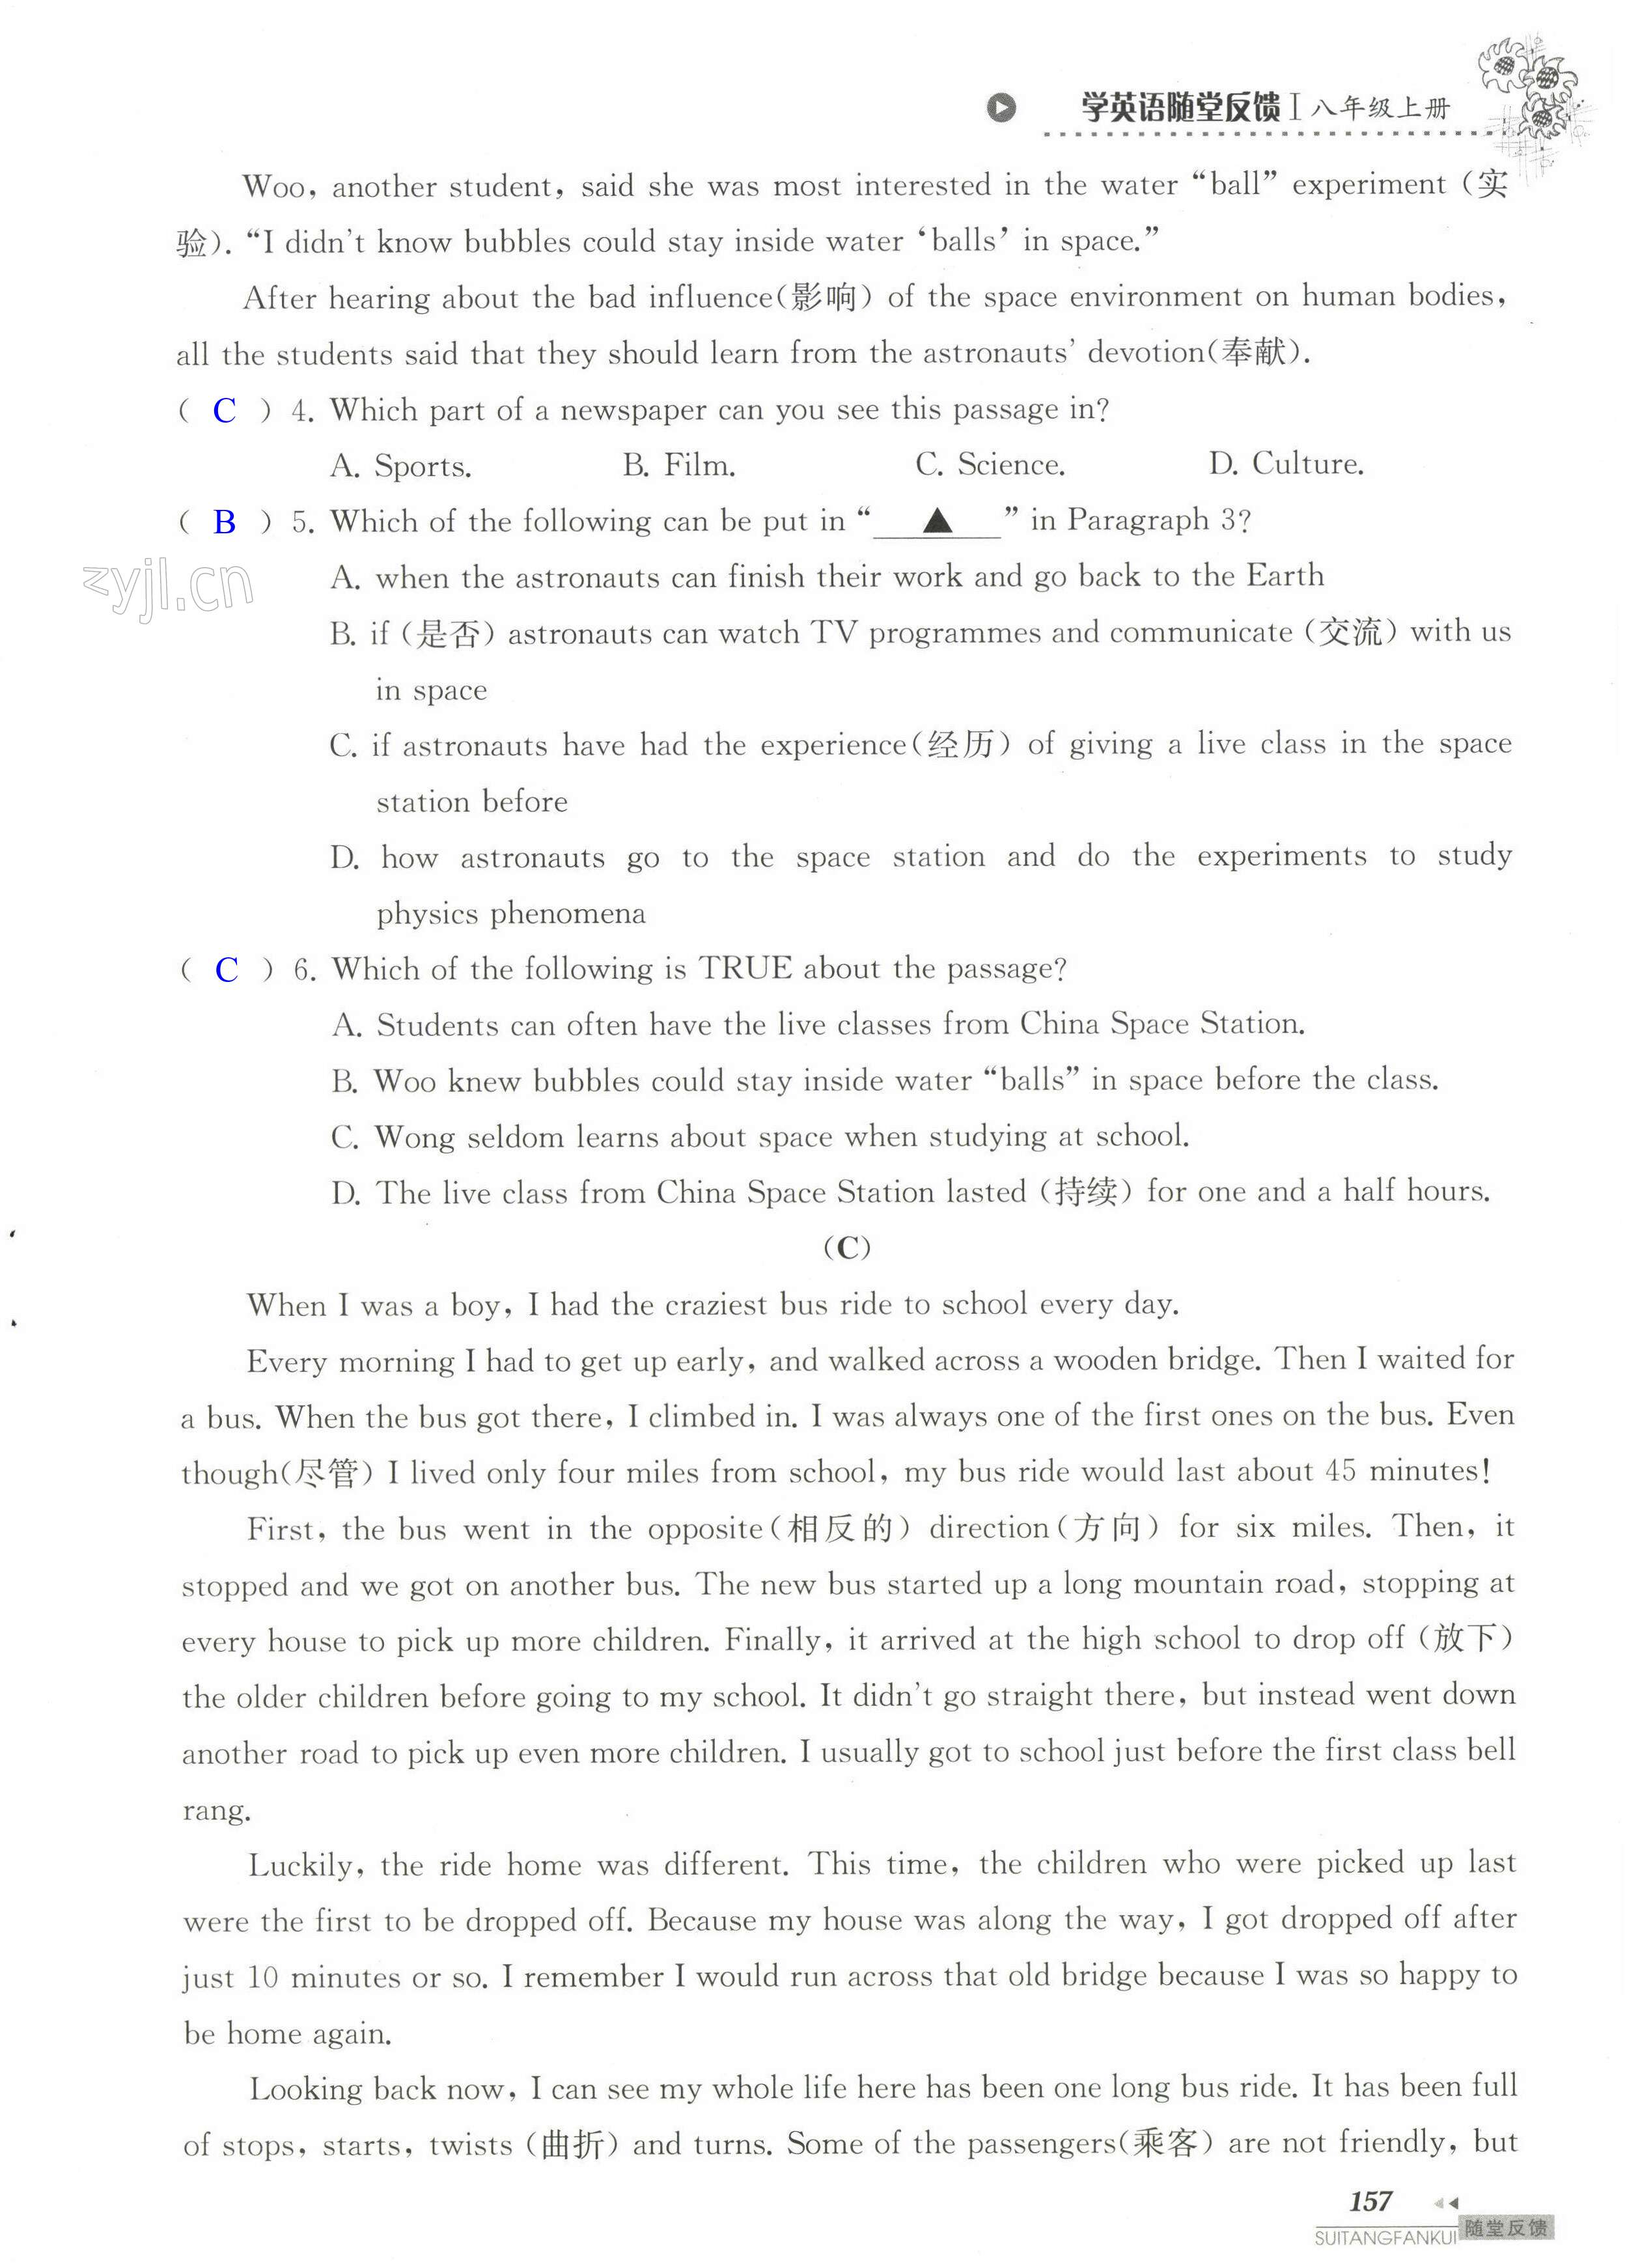 单元综合测试卷 Test for Unit 2 of 8A - 第157页